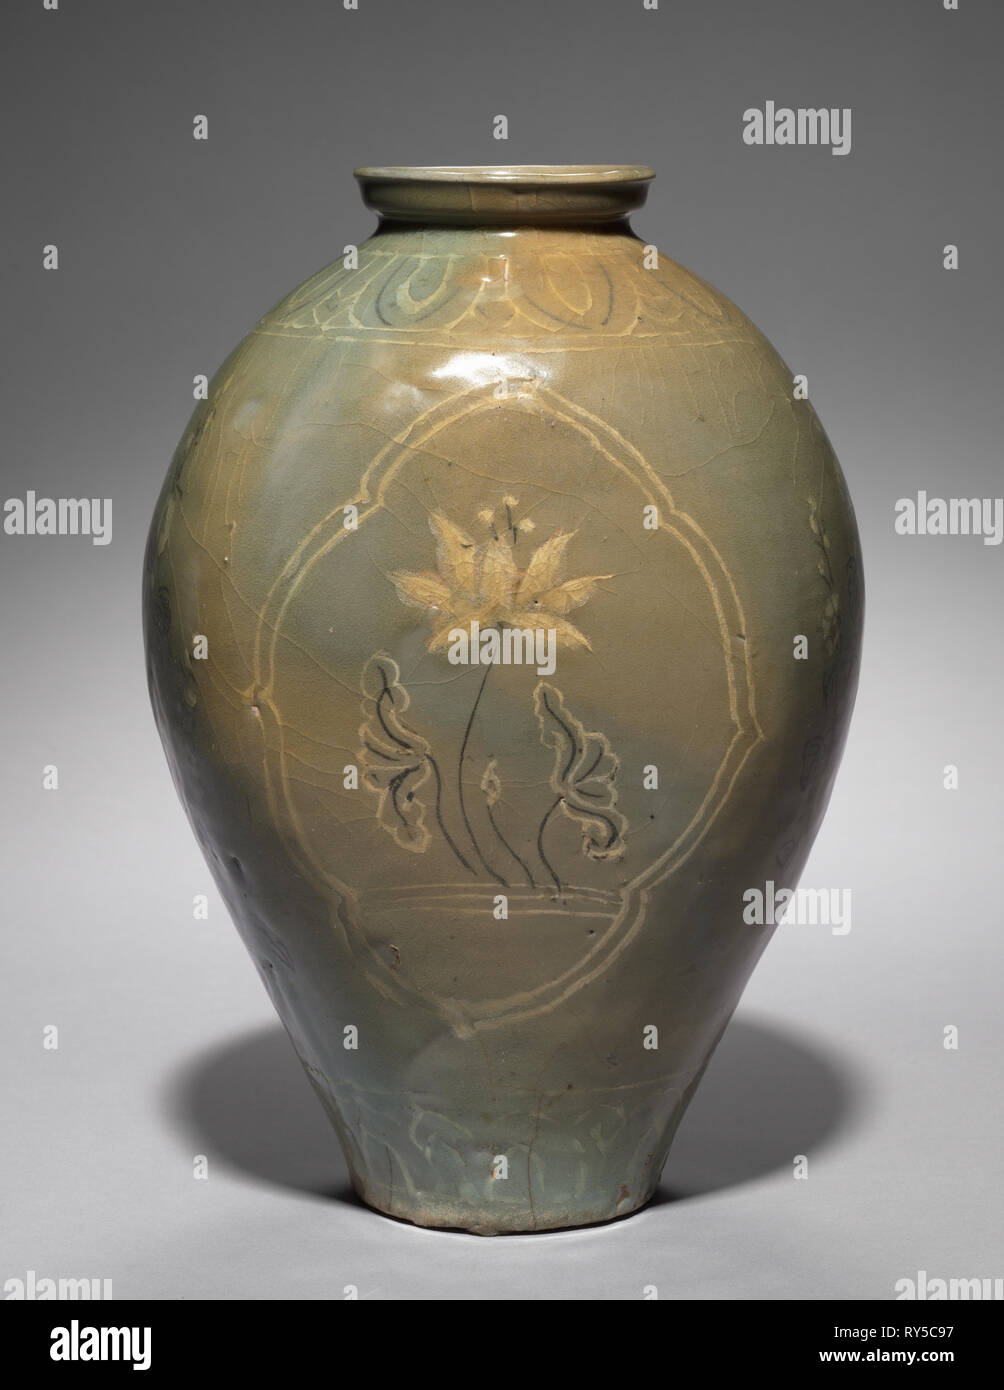 Pallone con intarsio di Lotus Design, 1200s-1300s. Corea, periodo Goryeo (918-1392). Gres, céladon con decorazione intarsiata Foto Stock